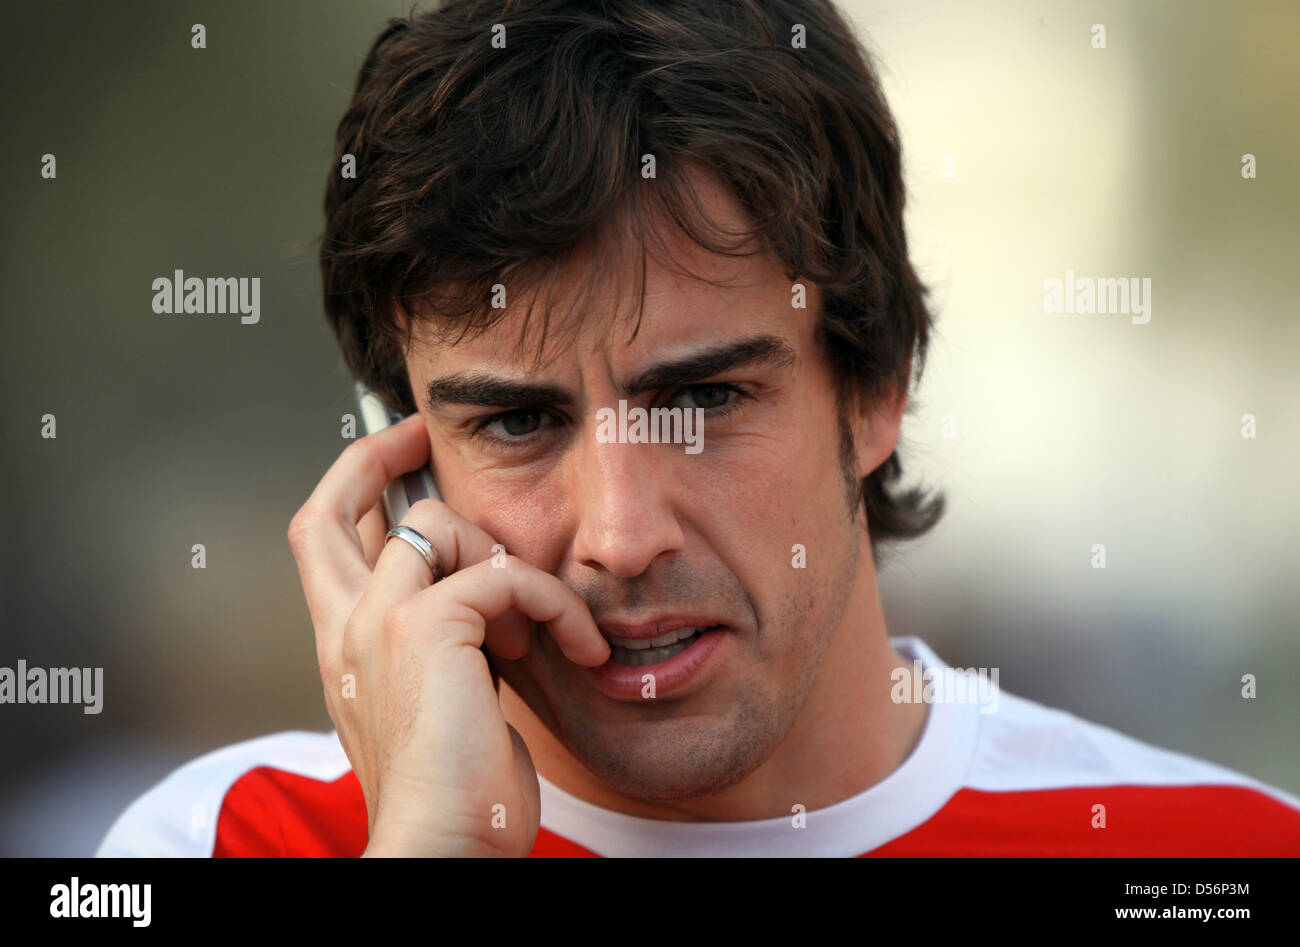 Pilote de Formule 1 espagnol Fernando Alonso de la Scuderia Ferrari en photo dans le paddock de Bahreïn International circuit de Sakhir, à Bahreïn, le 13 mars 2010. Photo : Jens Buettner Banque D'Images